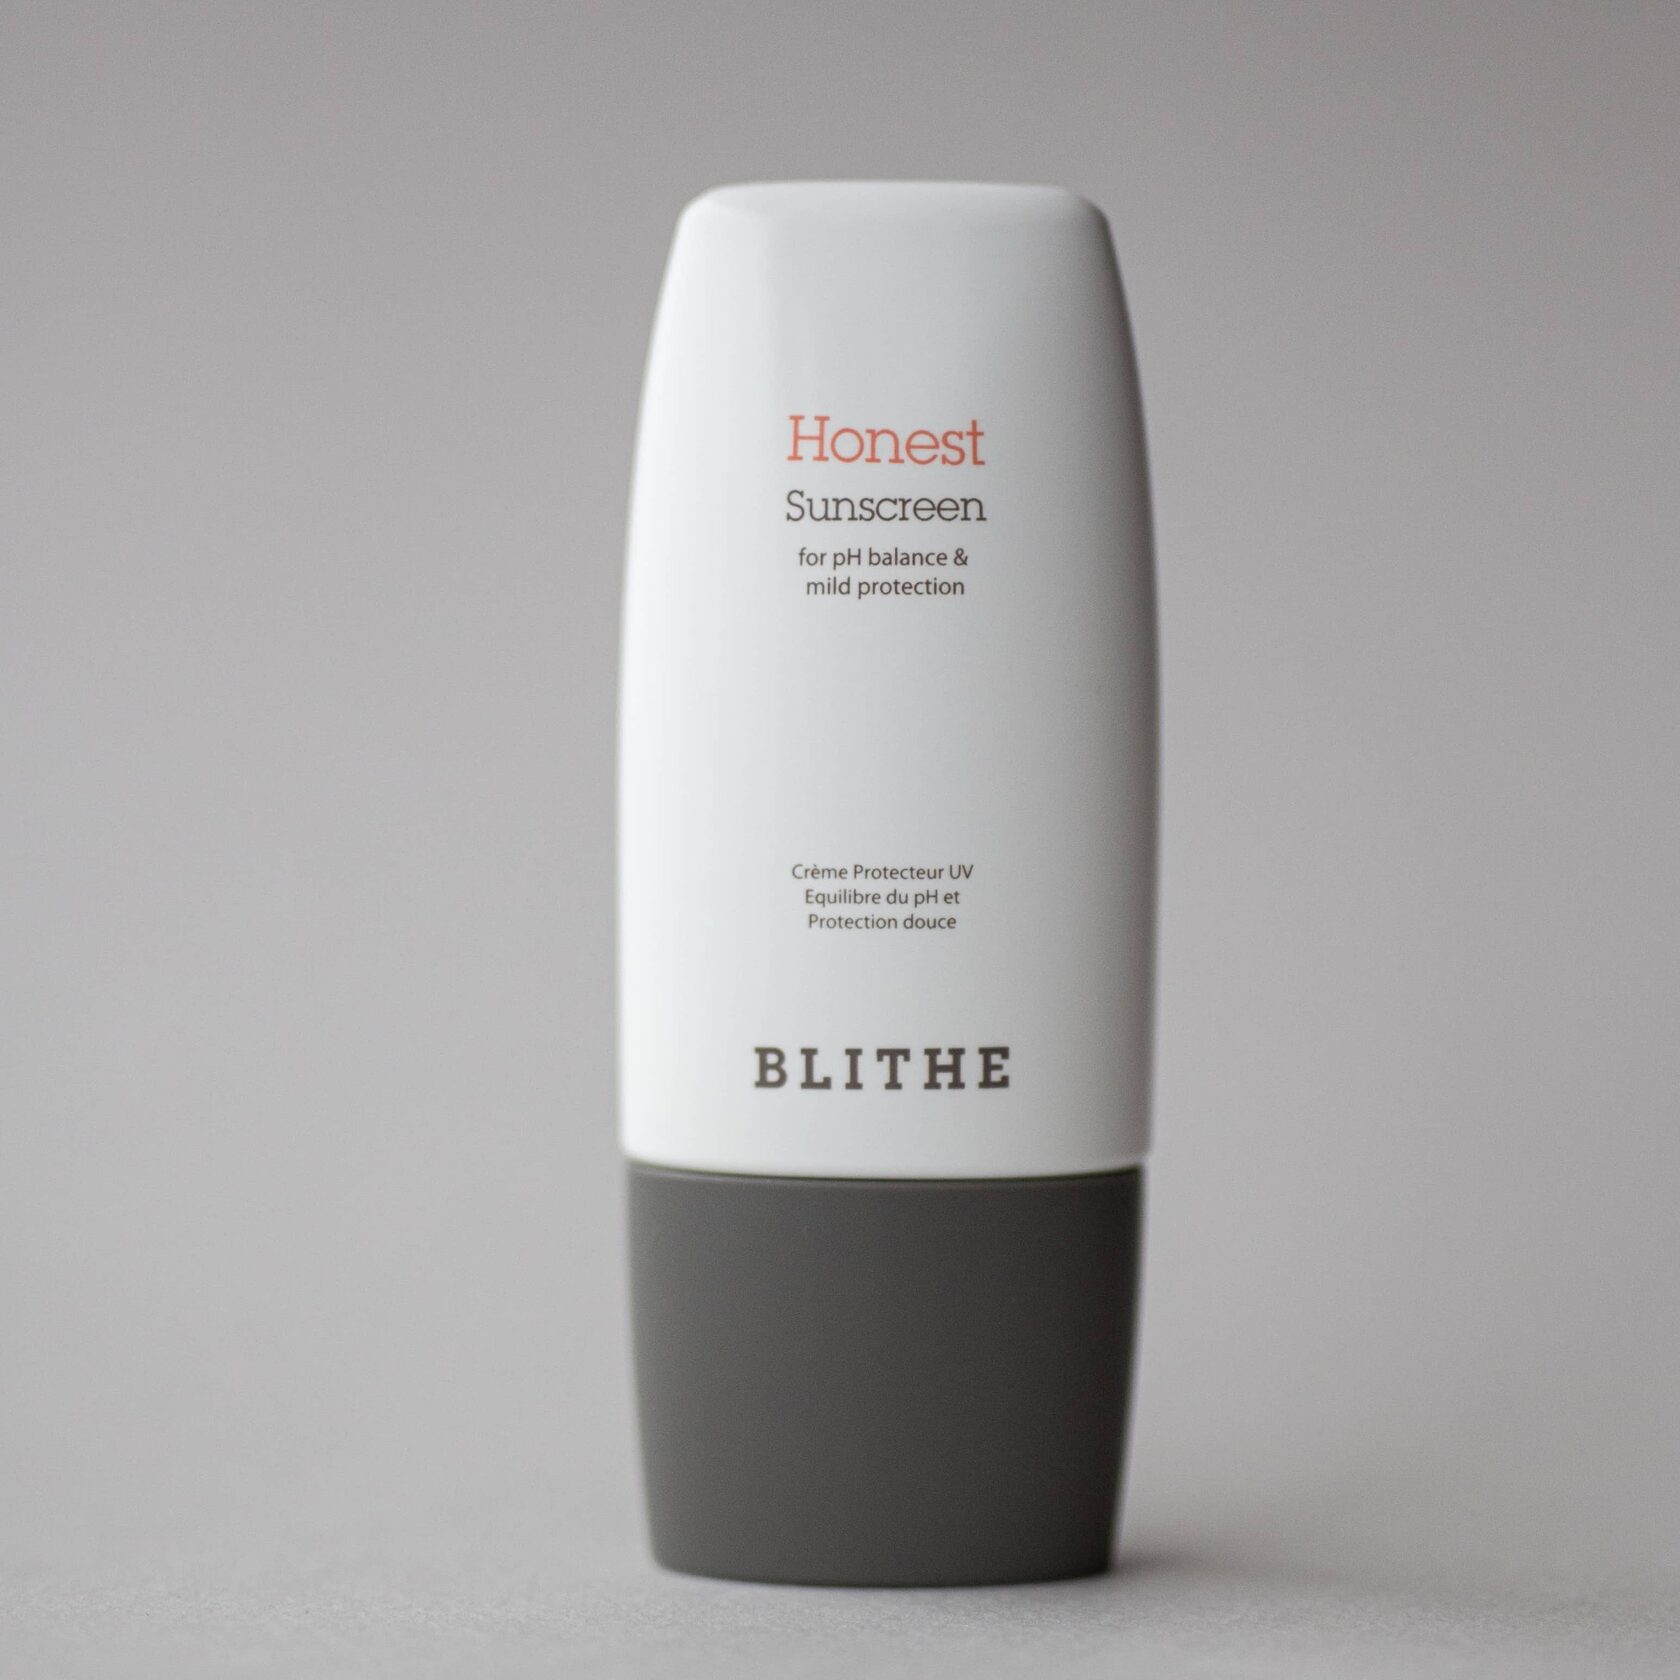 Blithe honest sunscreen. Blithe honest Sunscreen SPF 50+ pa ++++. Blithe солнцезащитный крем. D`Alba солнцезащитный крем SPF 50+. СПФ на стабильных химических фильтрах.